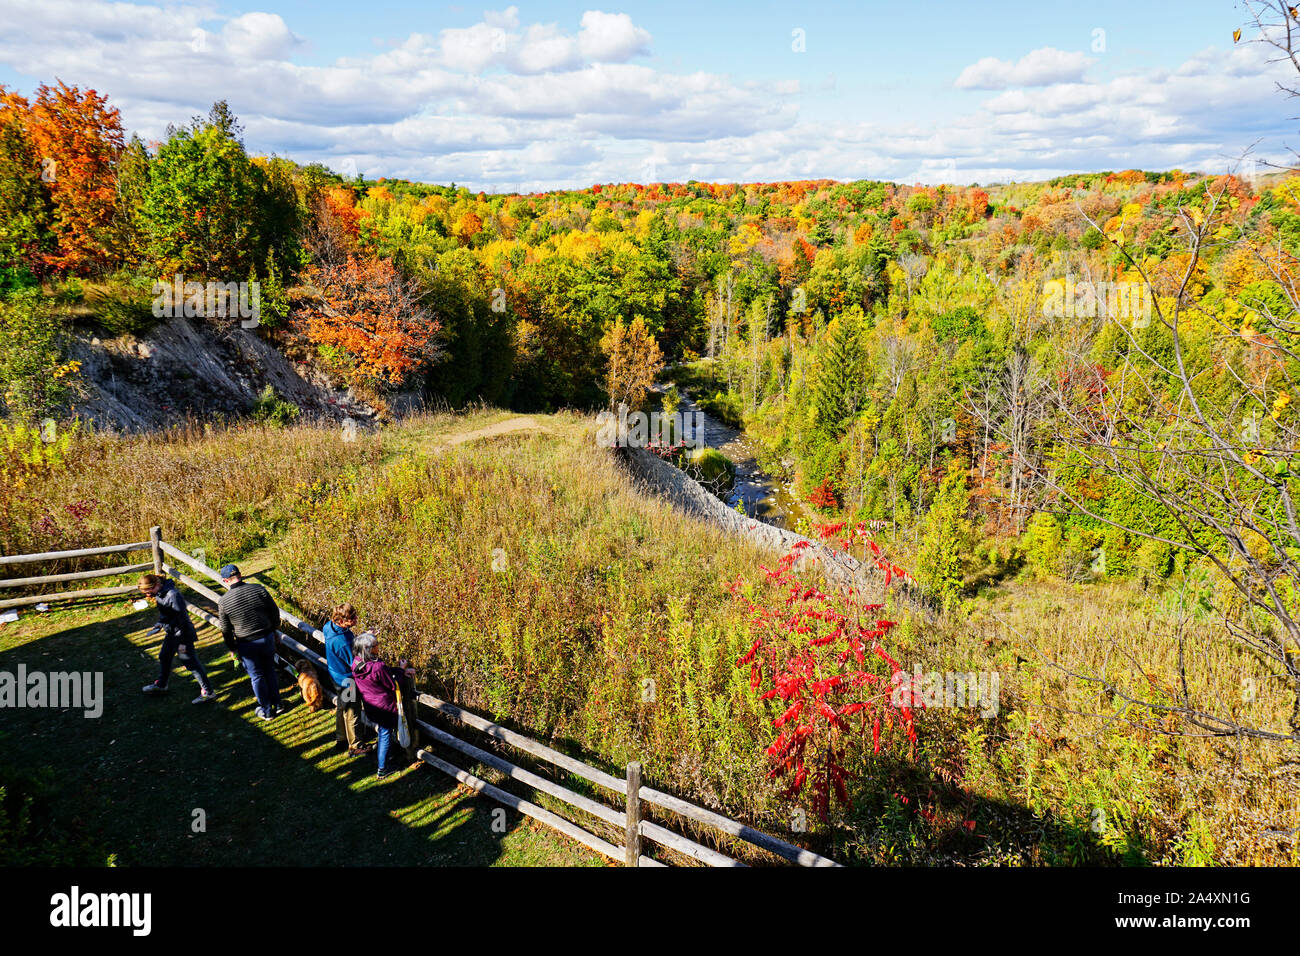 Les personnes qui désirent visiter panoramic lookout vue de brillantes couleurs d'automne dans le parc urbain national de la Rouge, à Toronto, Ontario, Canada Banque D'Images